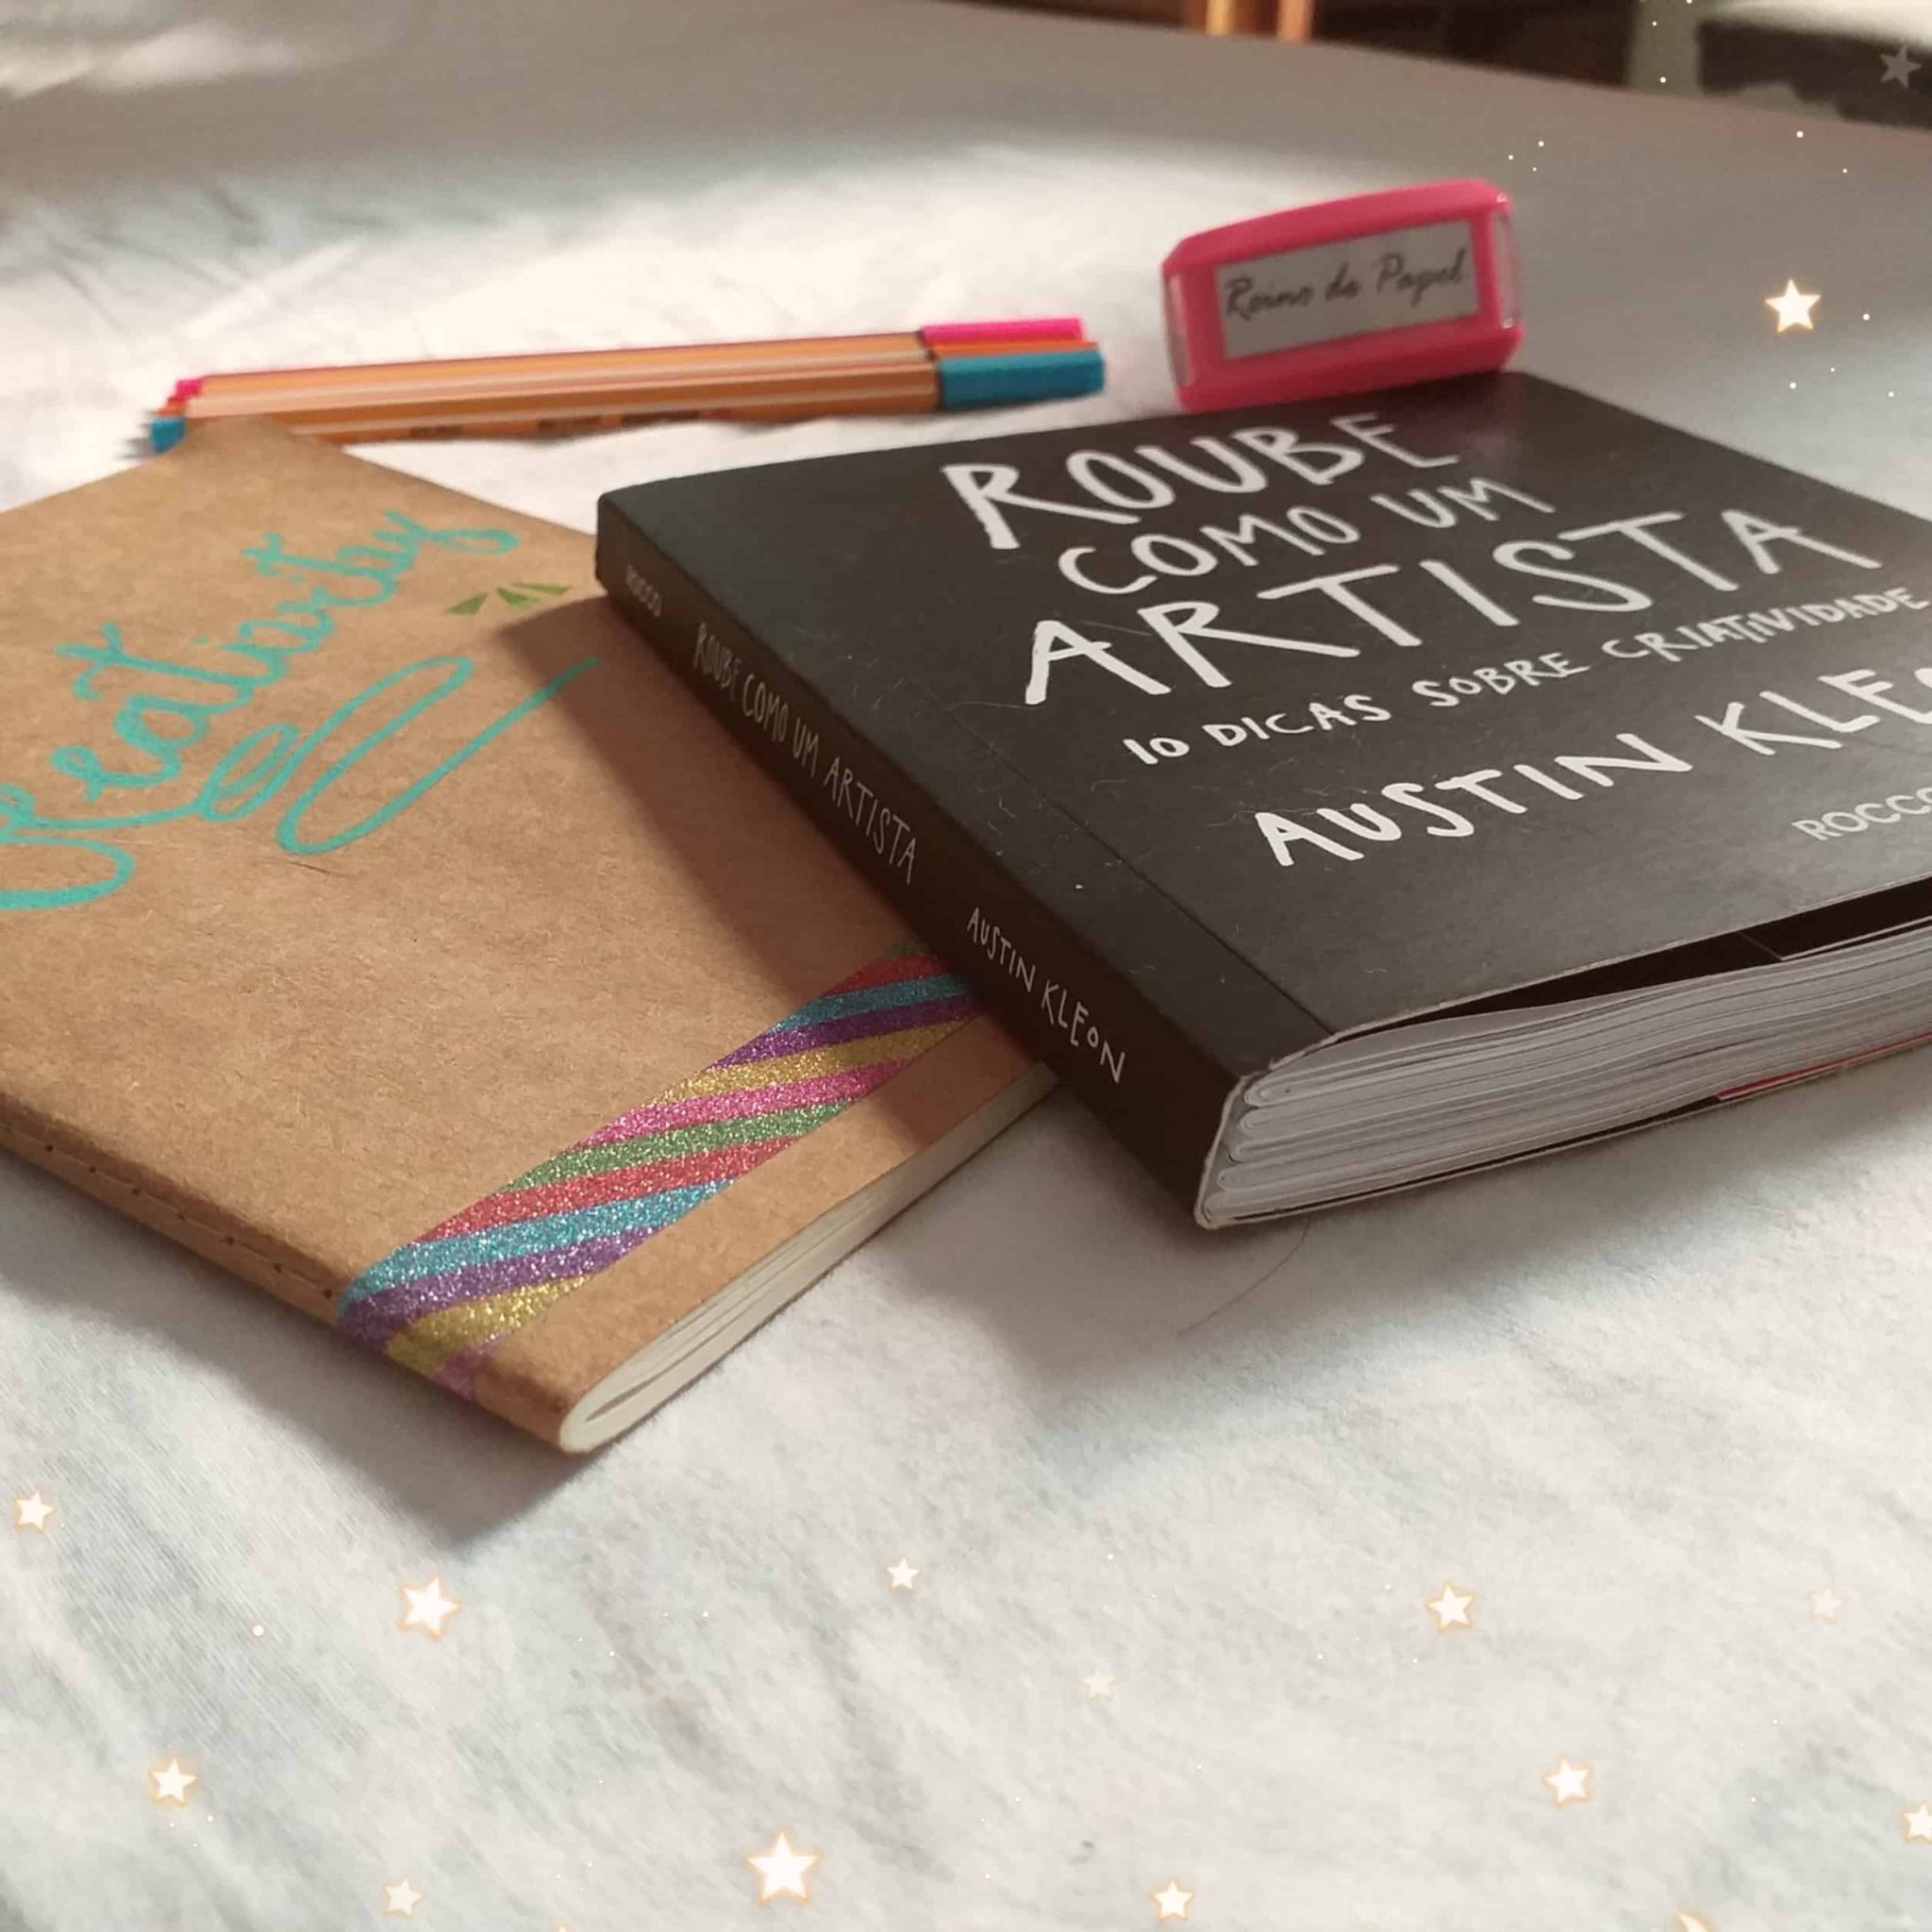 Vista periférica do livro Roube como um artista, ao lado de um caderno com capa marrom canetas coloridas e um carimbo escrito Reino de Papel